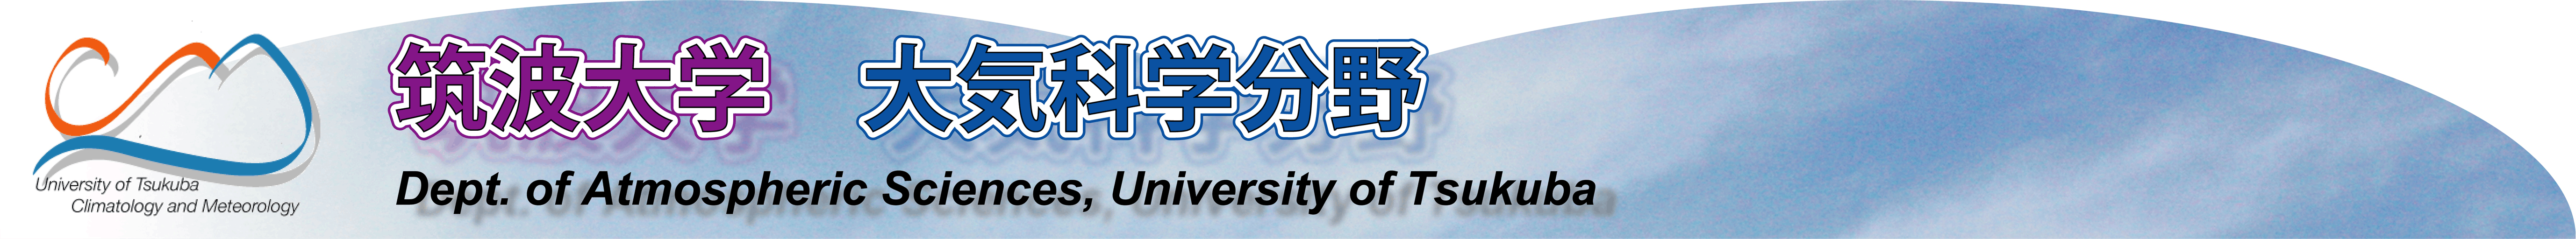 University of Tsukuba, Meteorology & Climatology